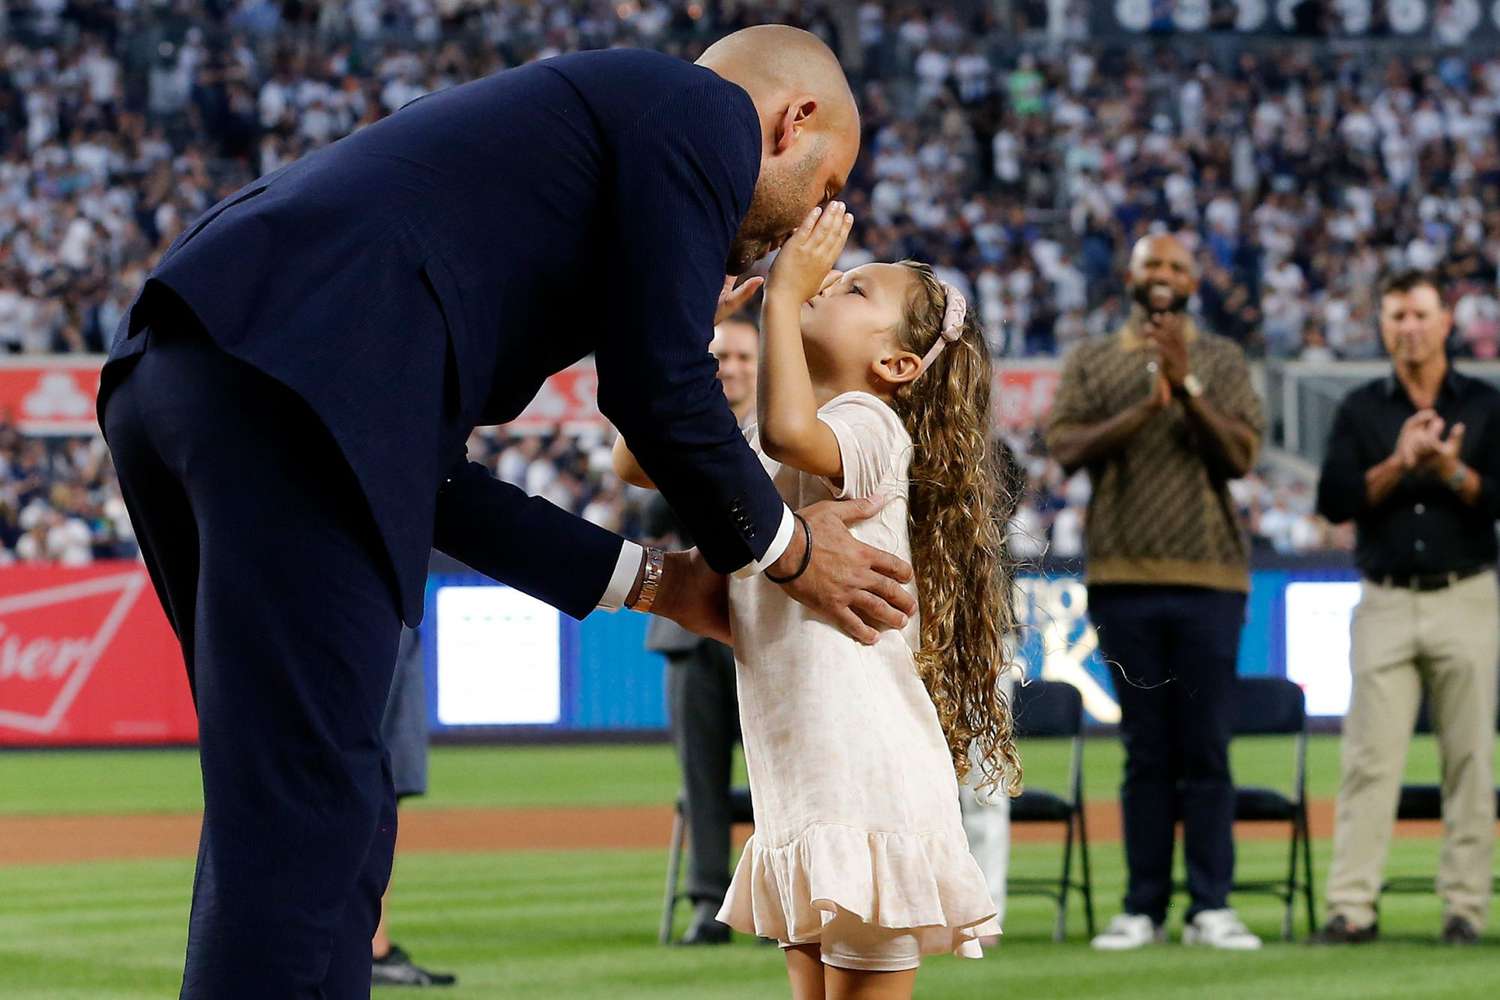 Derek Jeter는 5살 딸이 '15분' 동안 스포츠에 집중할 것이라고 '매우 자랑스럽다'고 말했습니다.